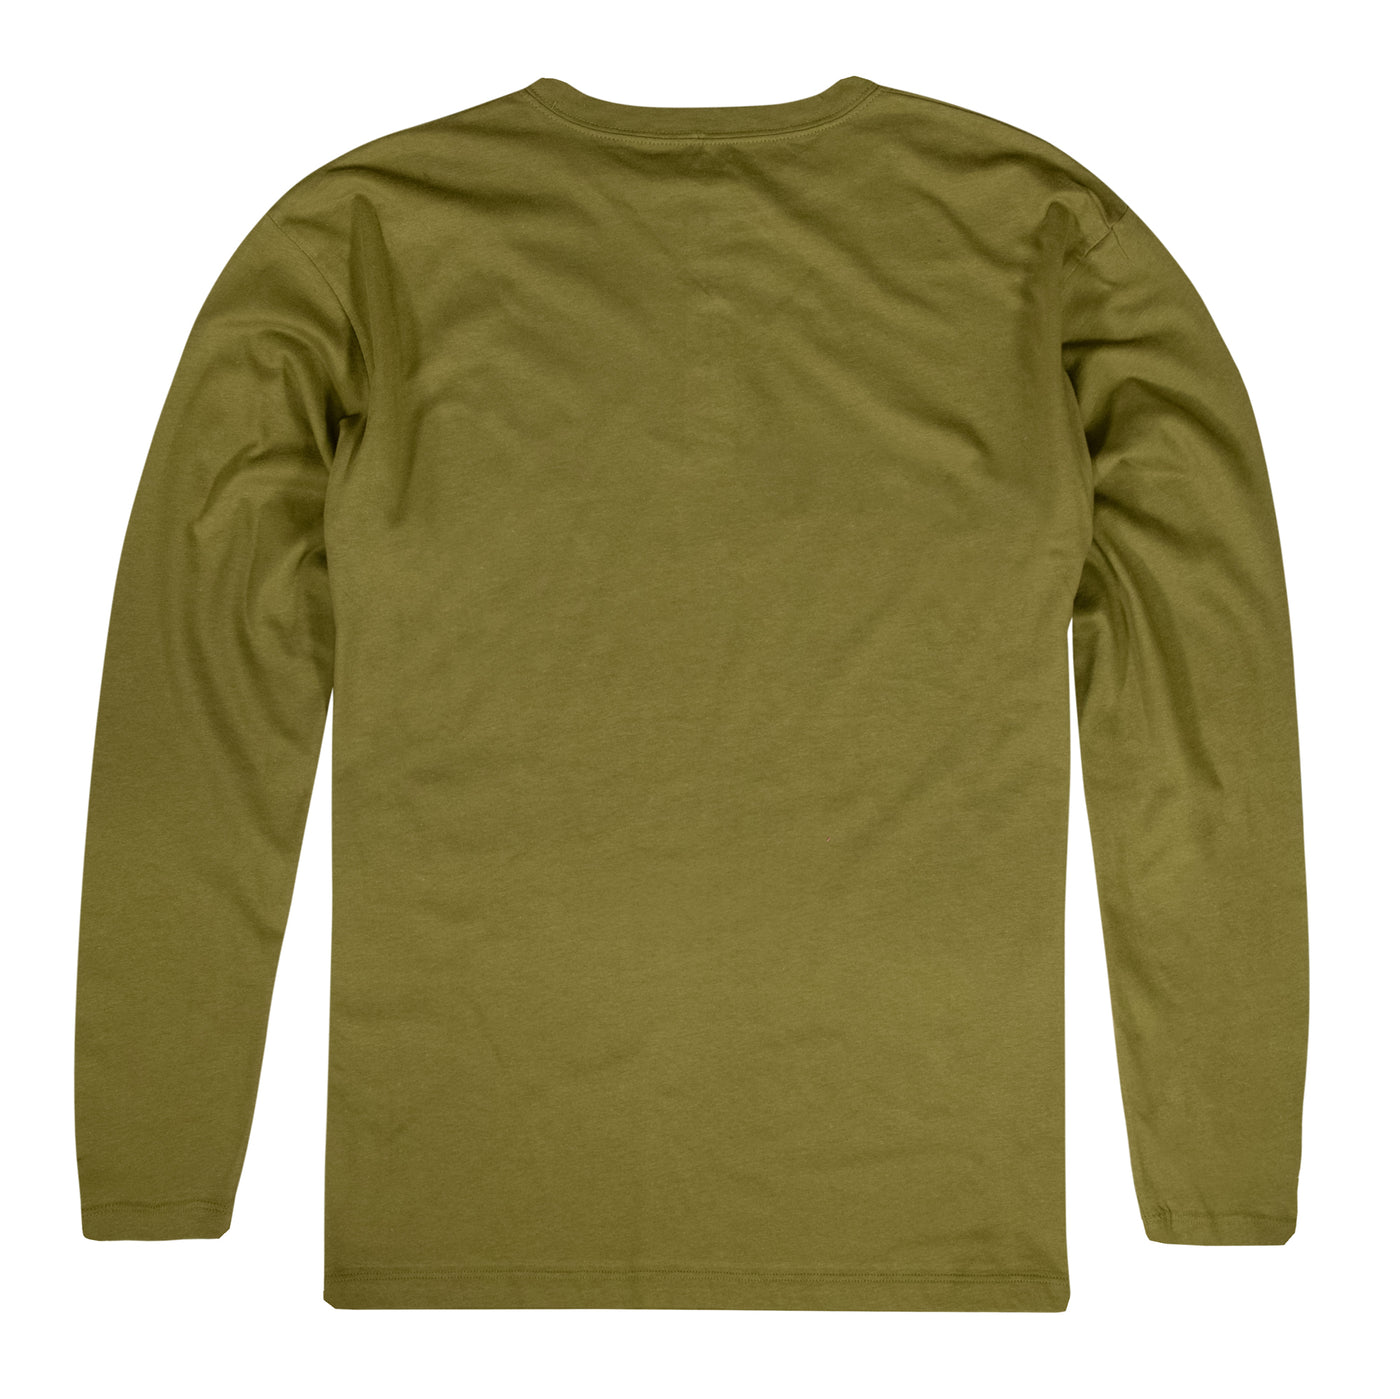 Mossy Oak Camp Henley Shirt – The Mossy Oak Store